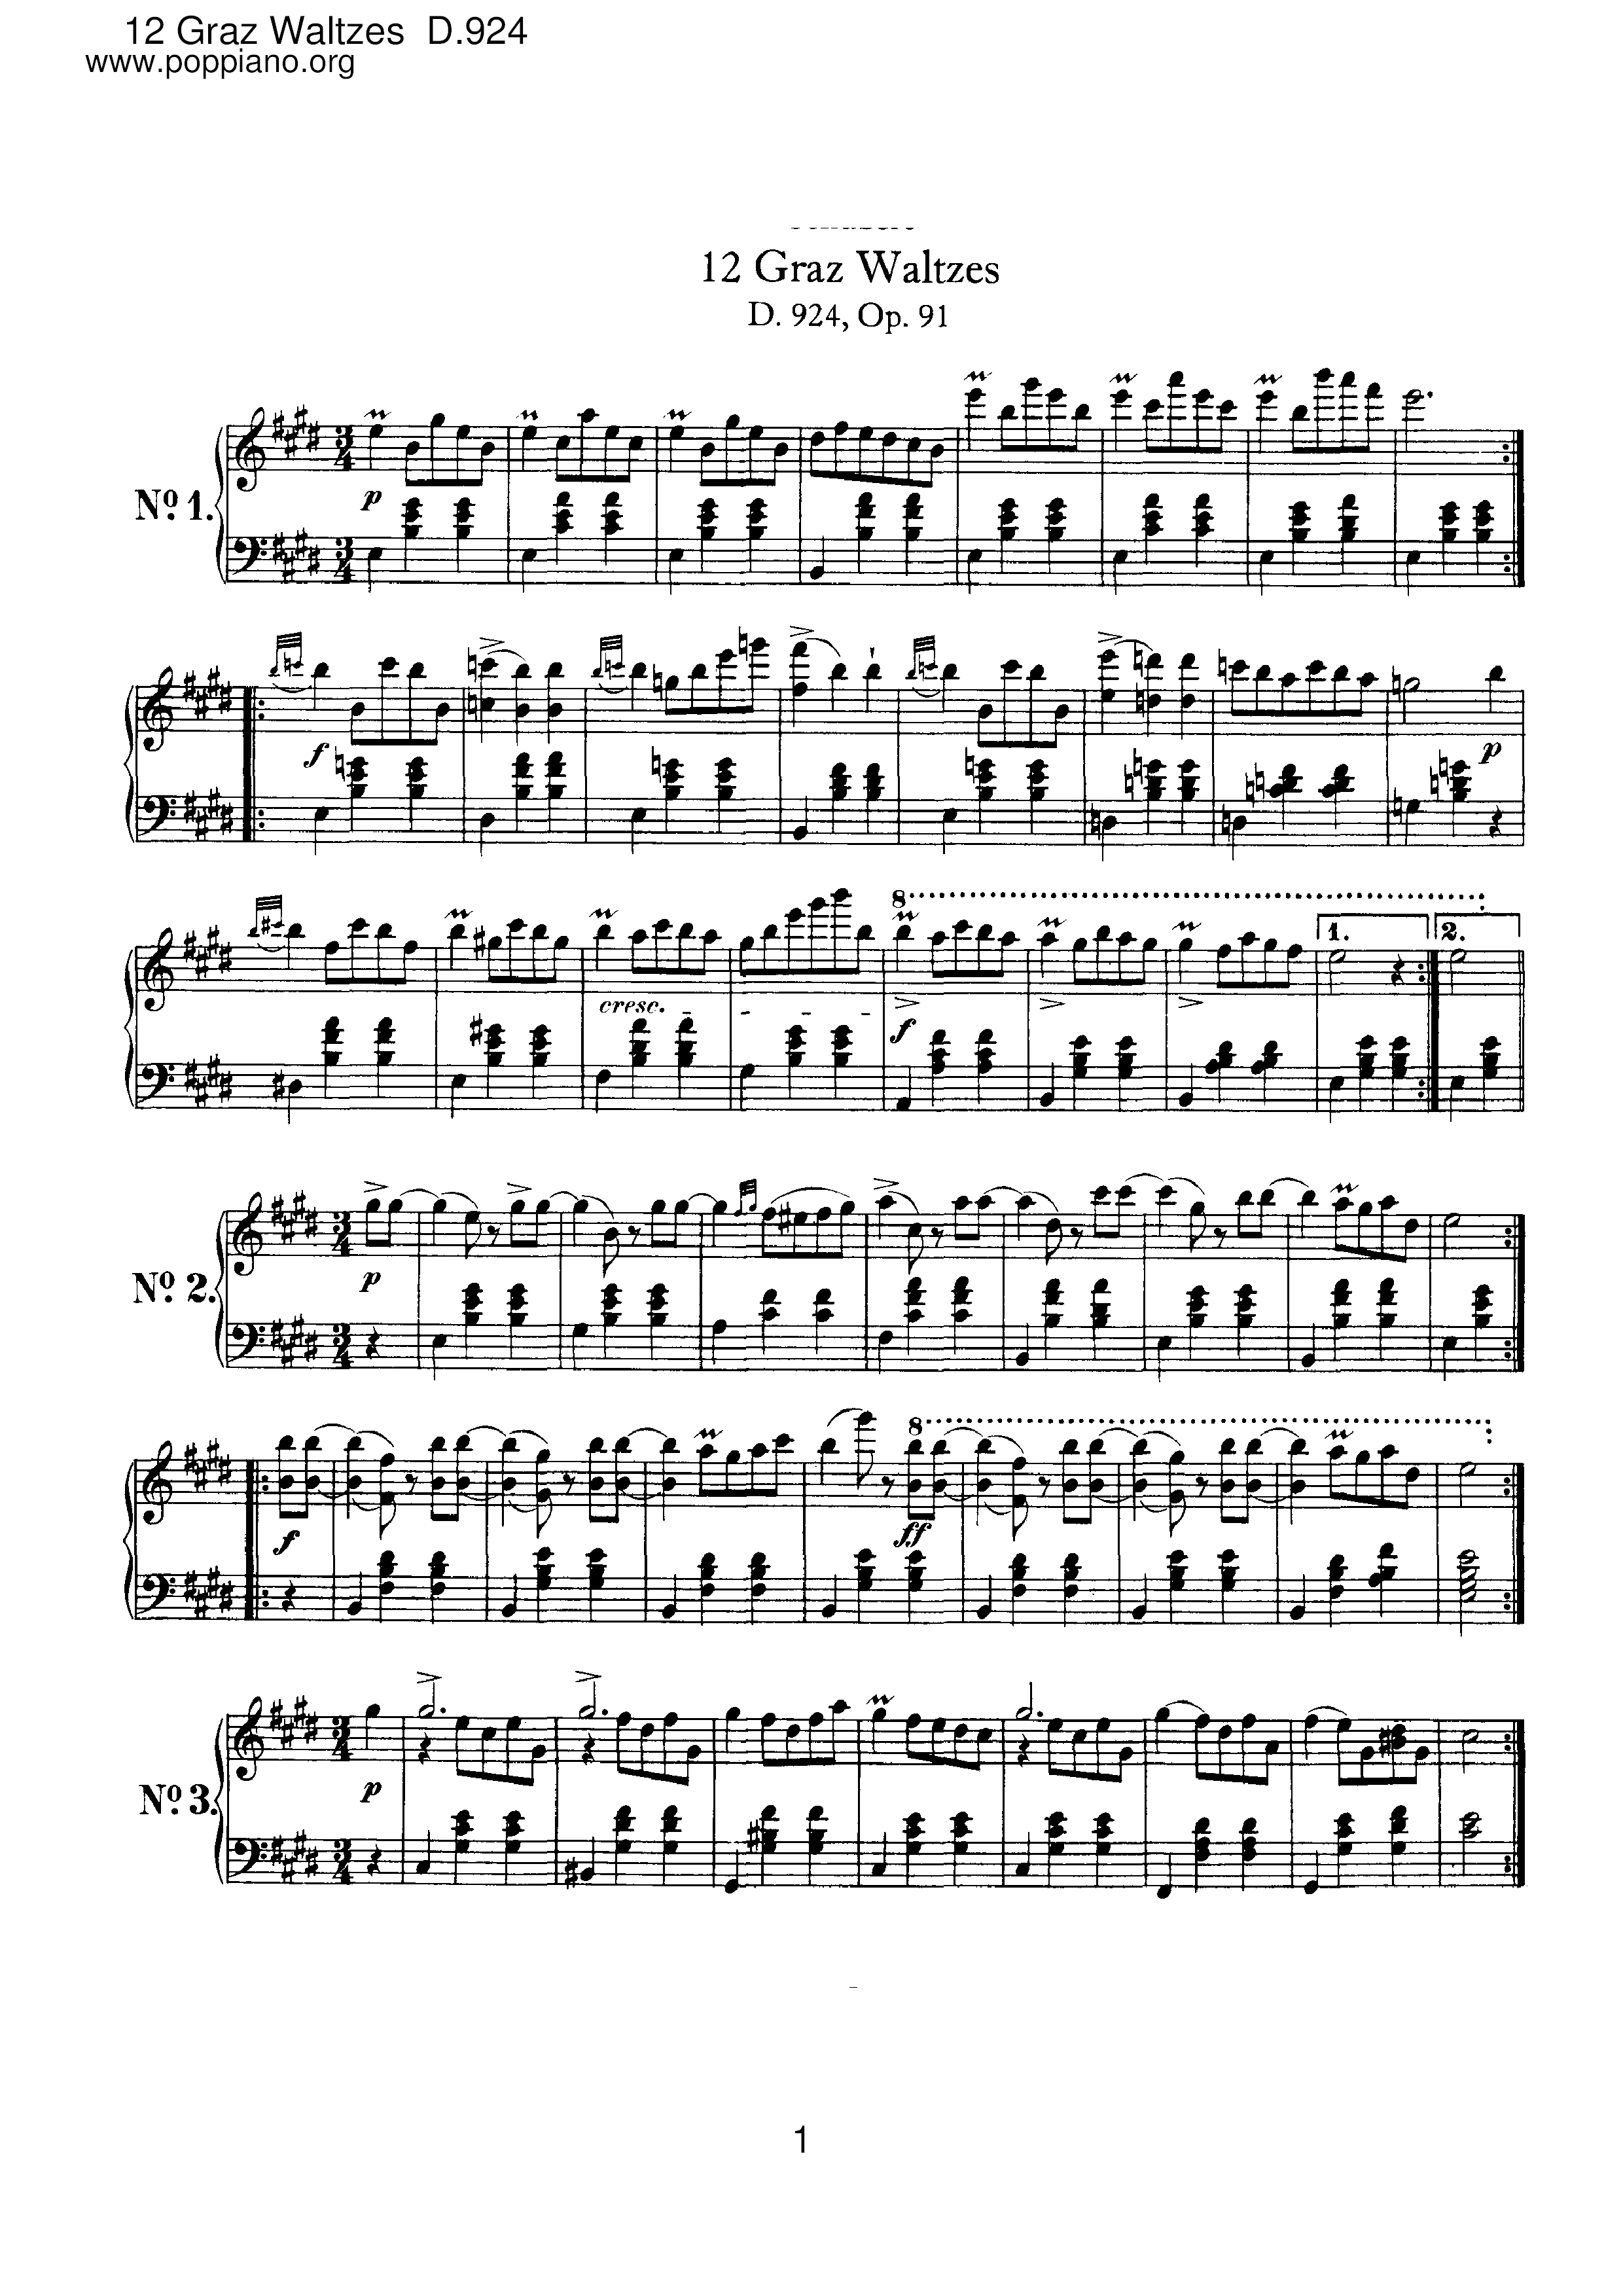 12 Graz Waltzes, D.924 (Op.91) Score